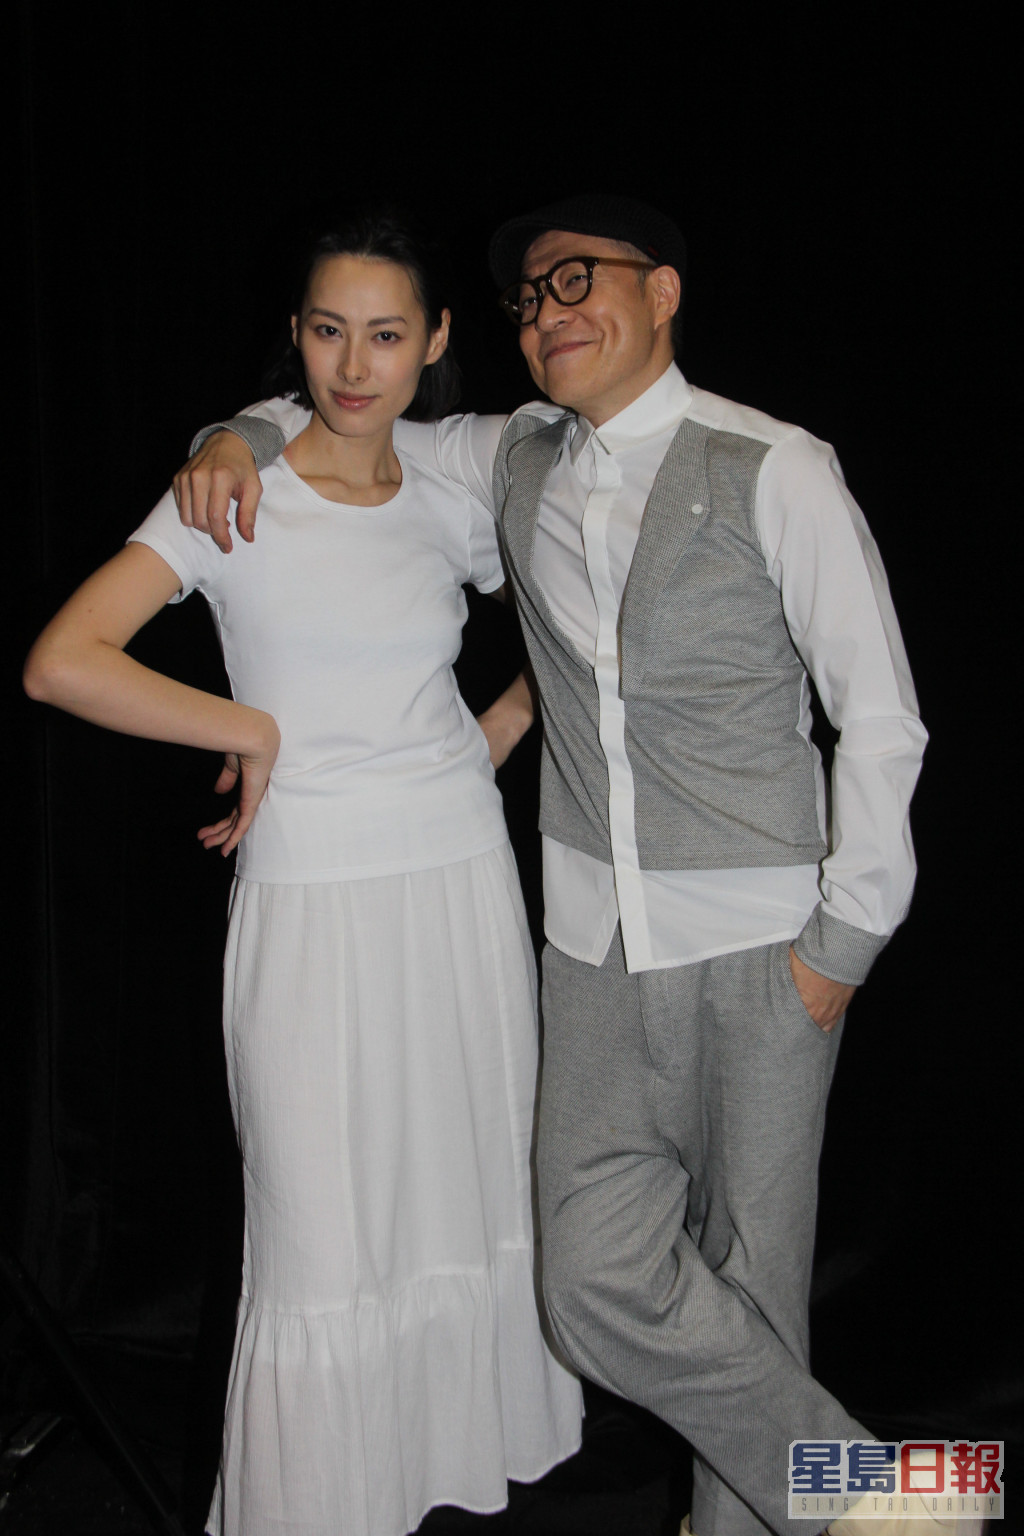 2014年与梁洛施合作舞台剧《快乐勿语》。